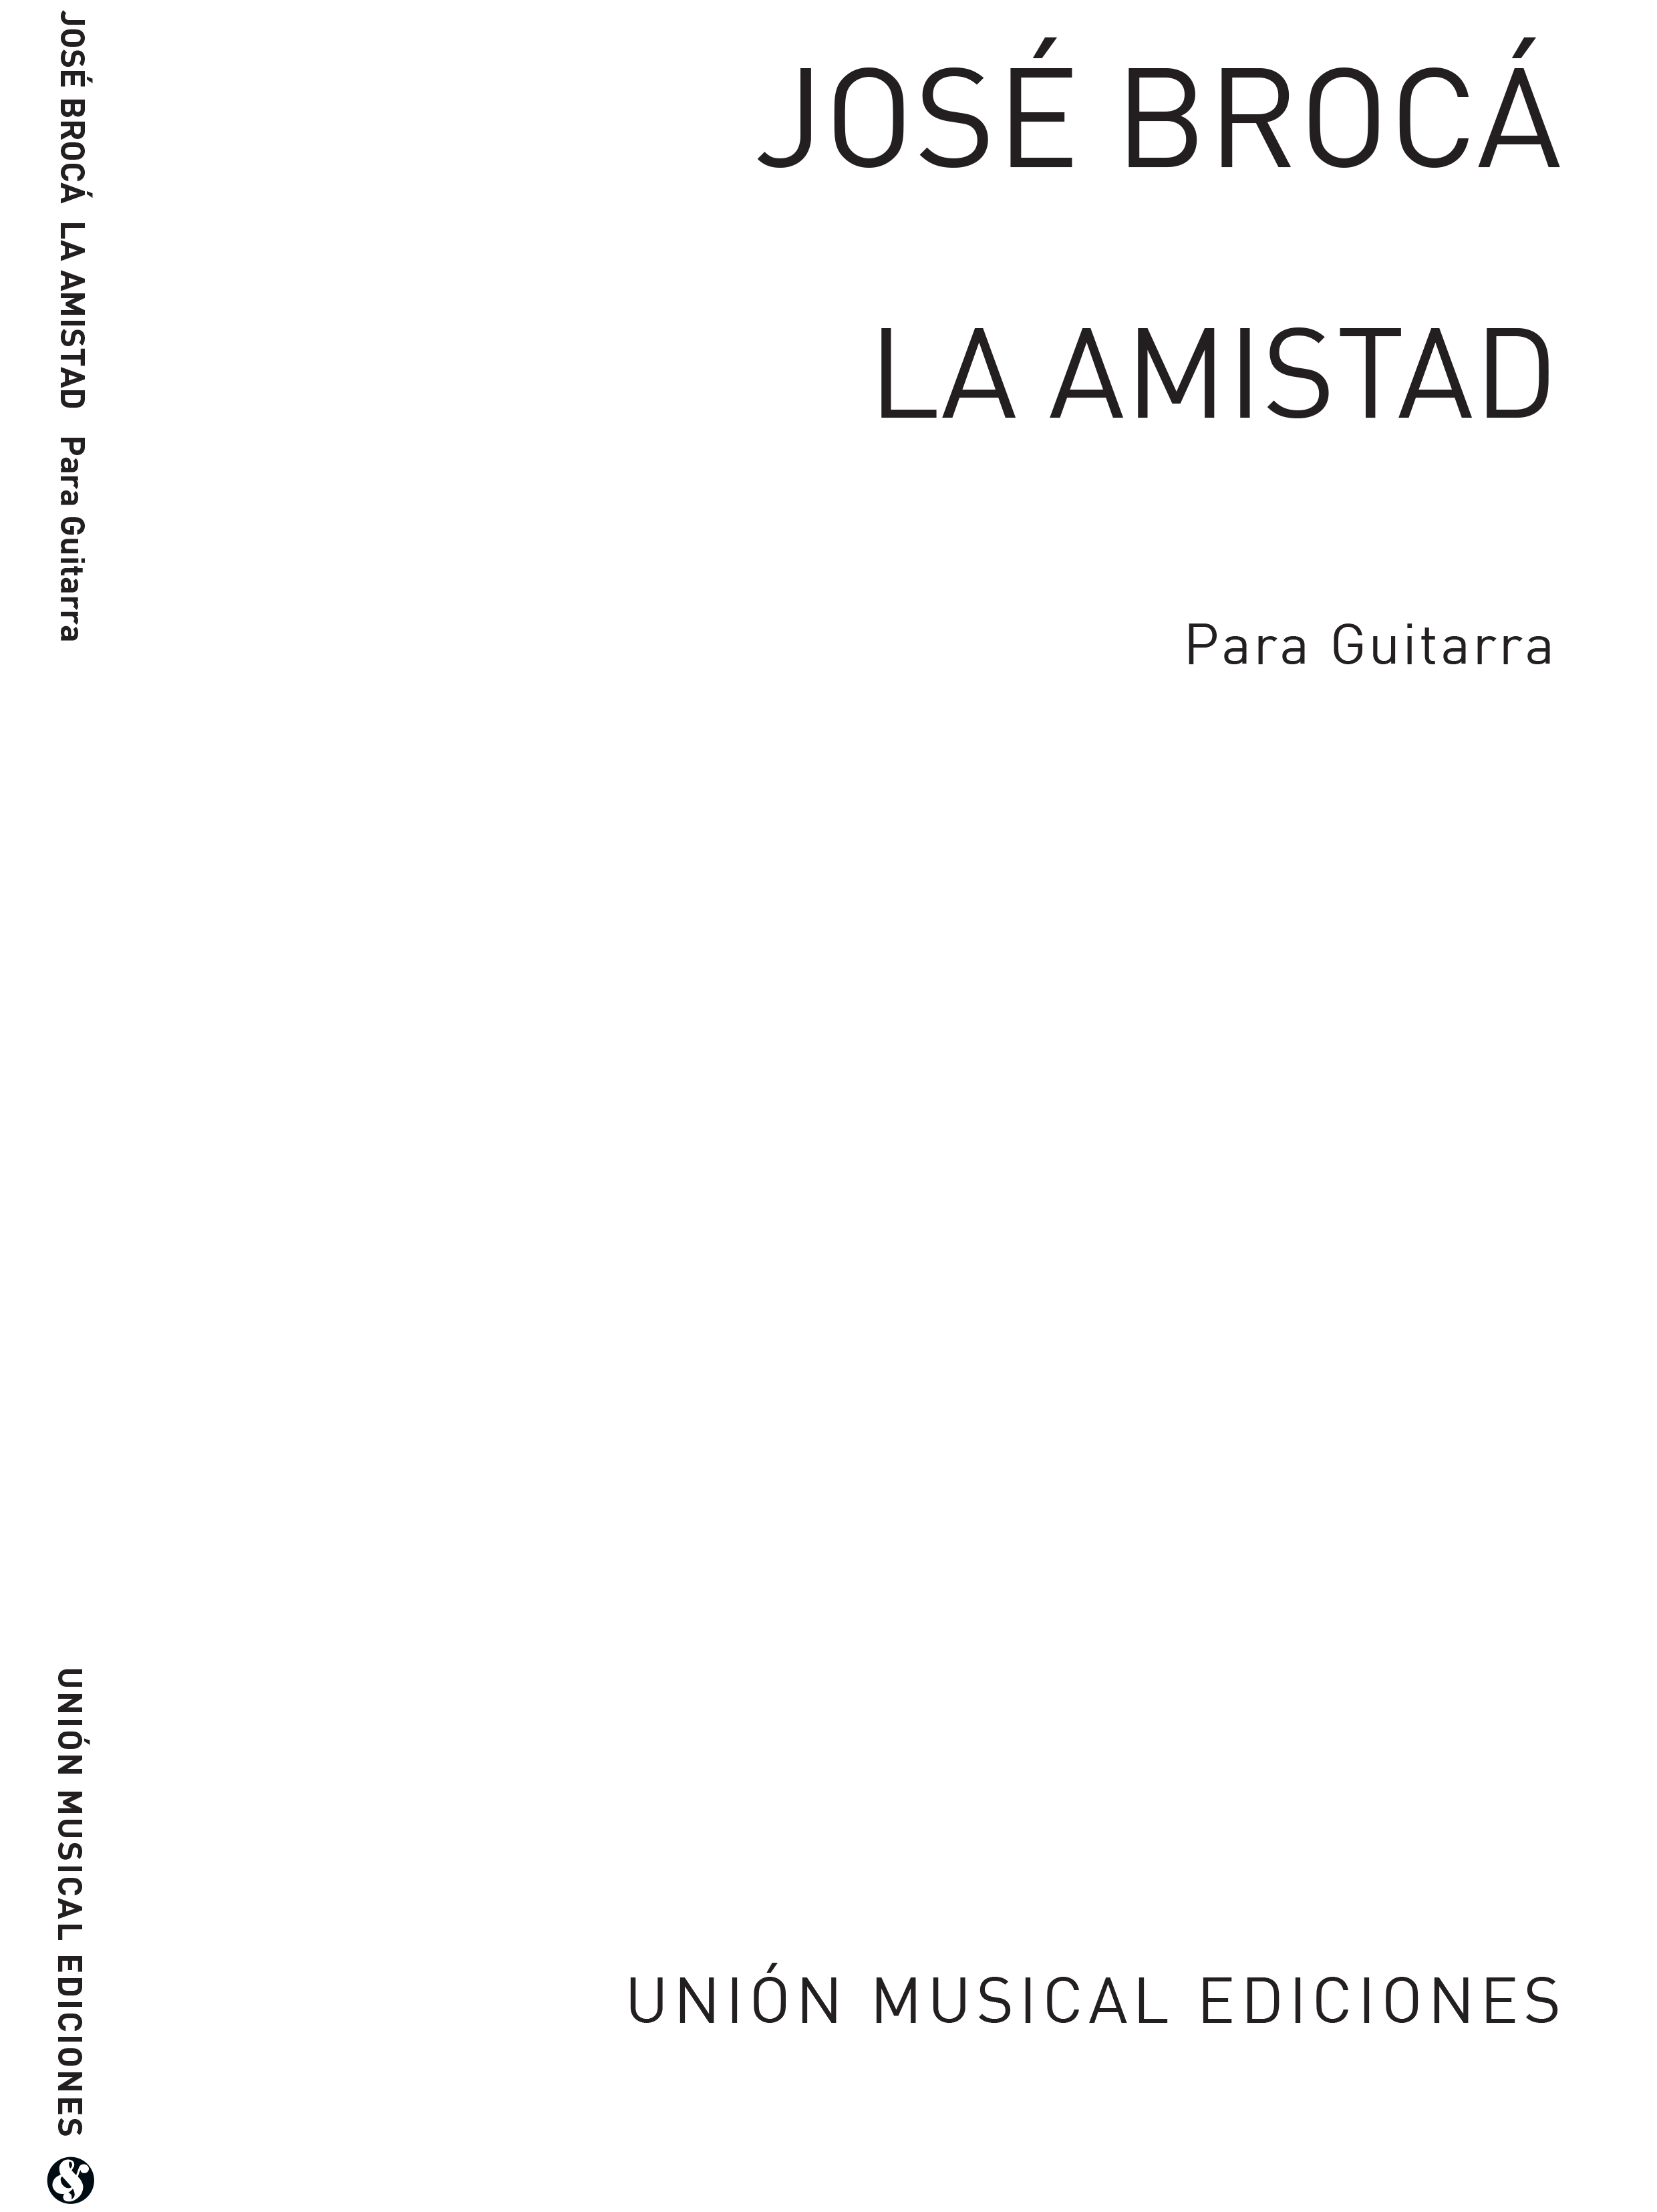 Jose Broca: La Amistad  Fantasia Con Variaciones: Guitar: Instrumental Work